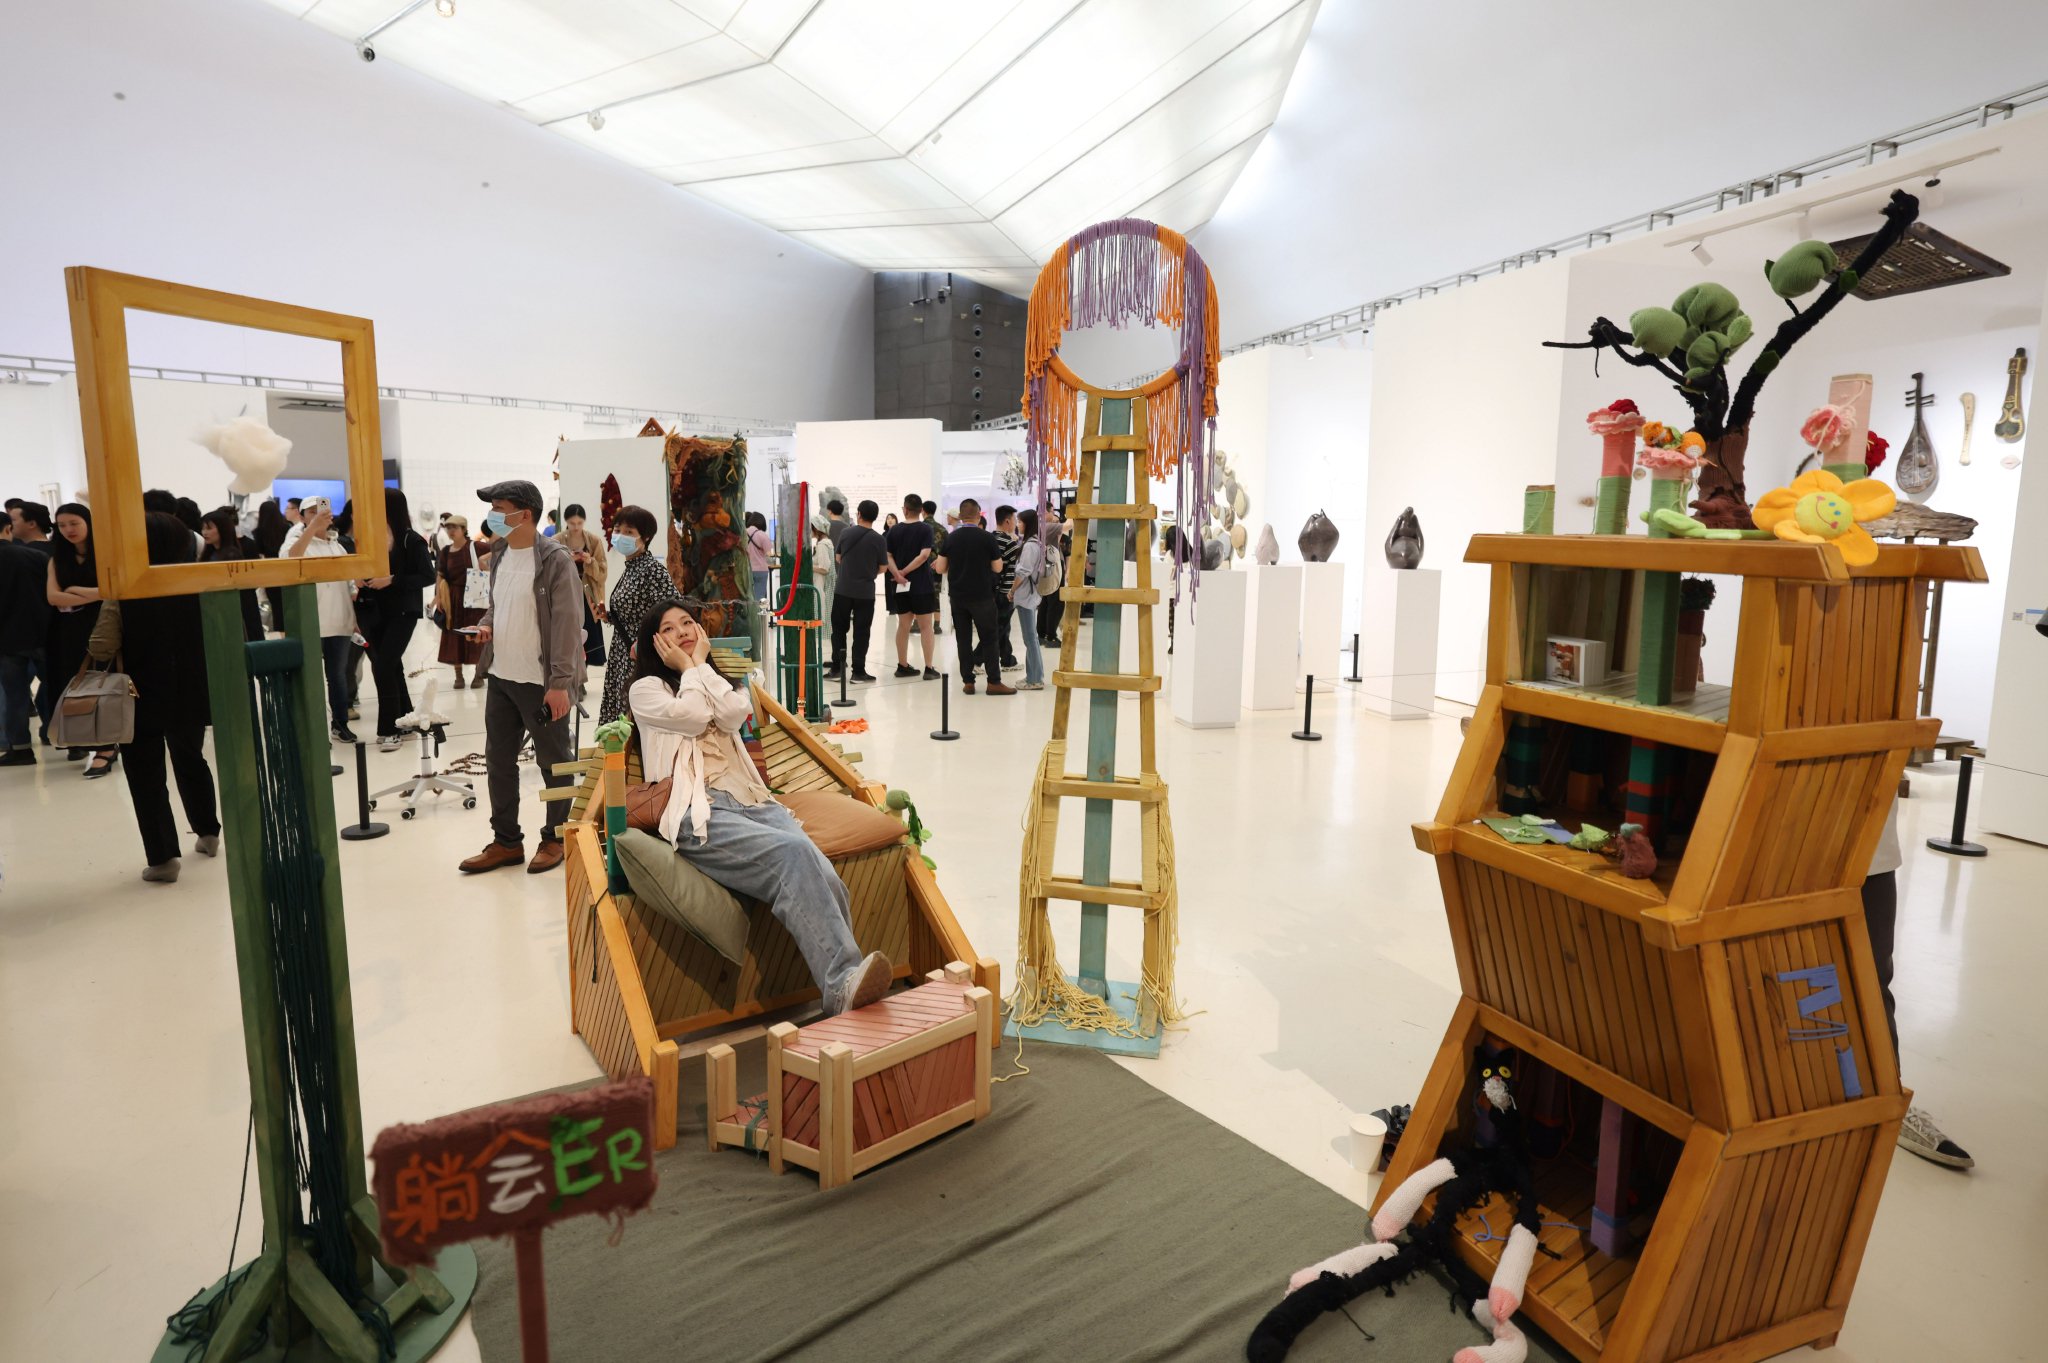 觀眾在展廳體驗雕塑作品《躺會兒》。新京報記者 李木易 攝